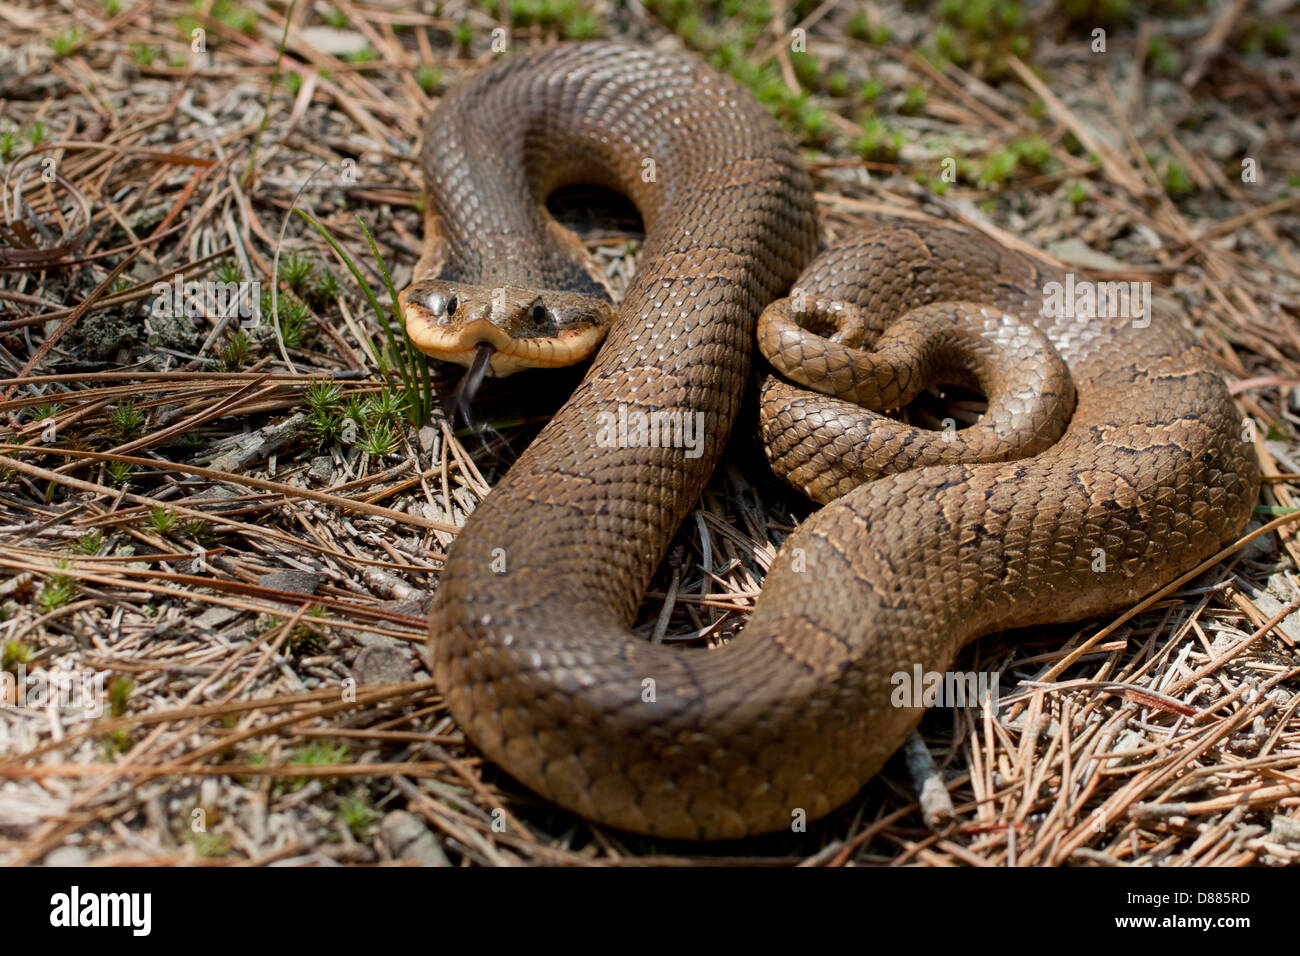 Vista ingrandita di un orientale hognose snake utilizzando la sua lingua biforcuta per gustare l'aria - Heterodon platyrhinos Foto Stock